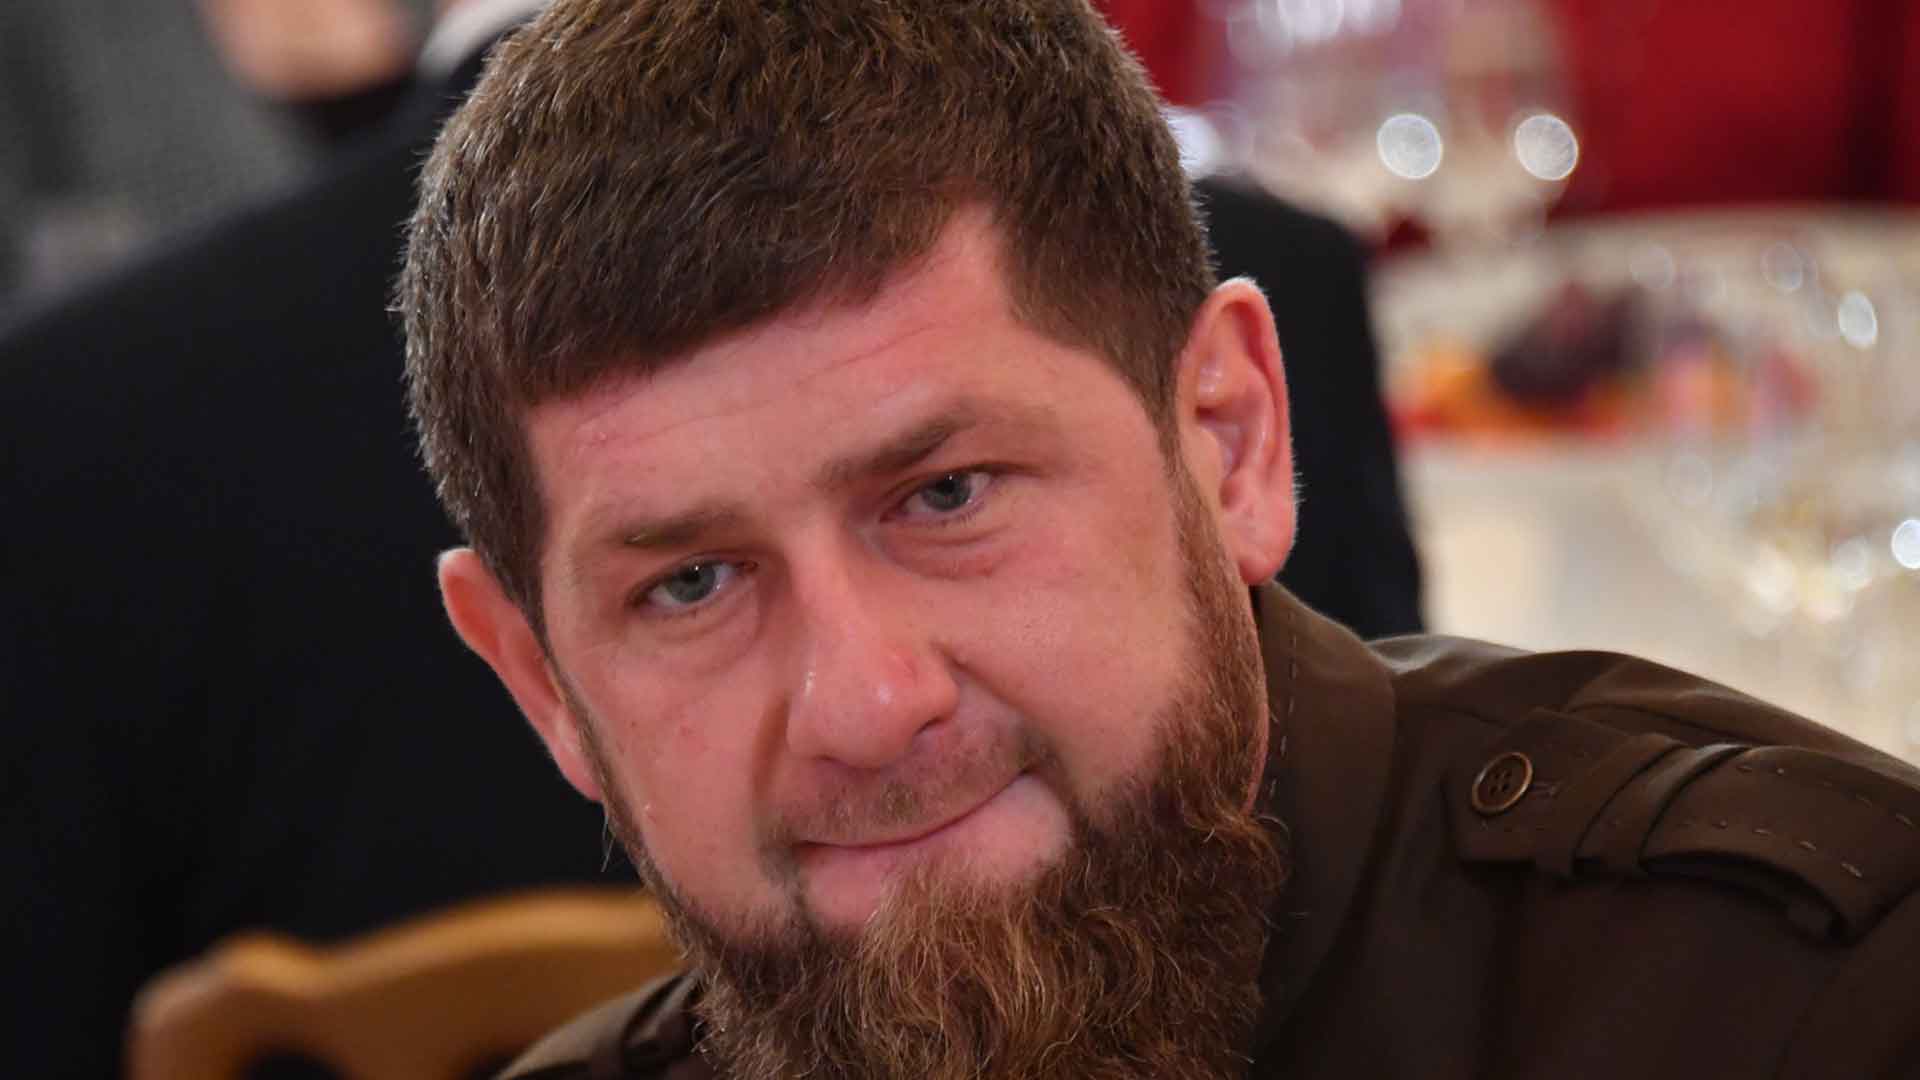 Глава Чечни ранее нецензурно выразился в отношении «людей из интернета» Фото: © GLOBAL LOOK press / Komsomolskaya Pravda